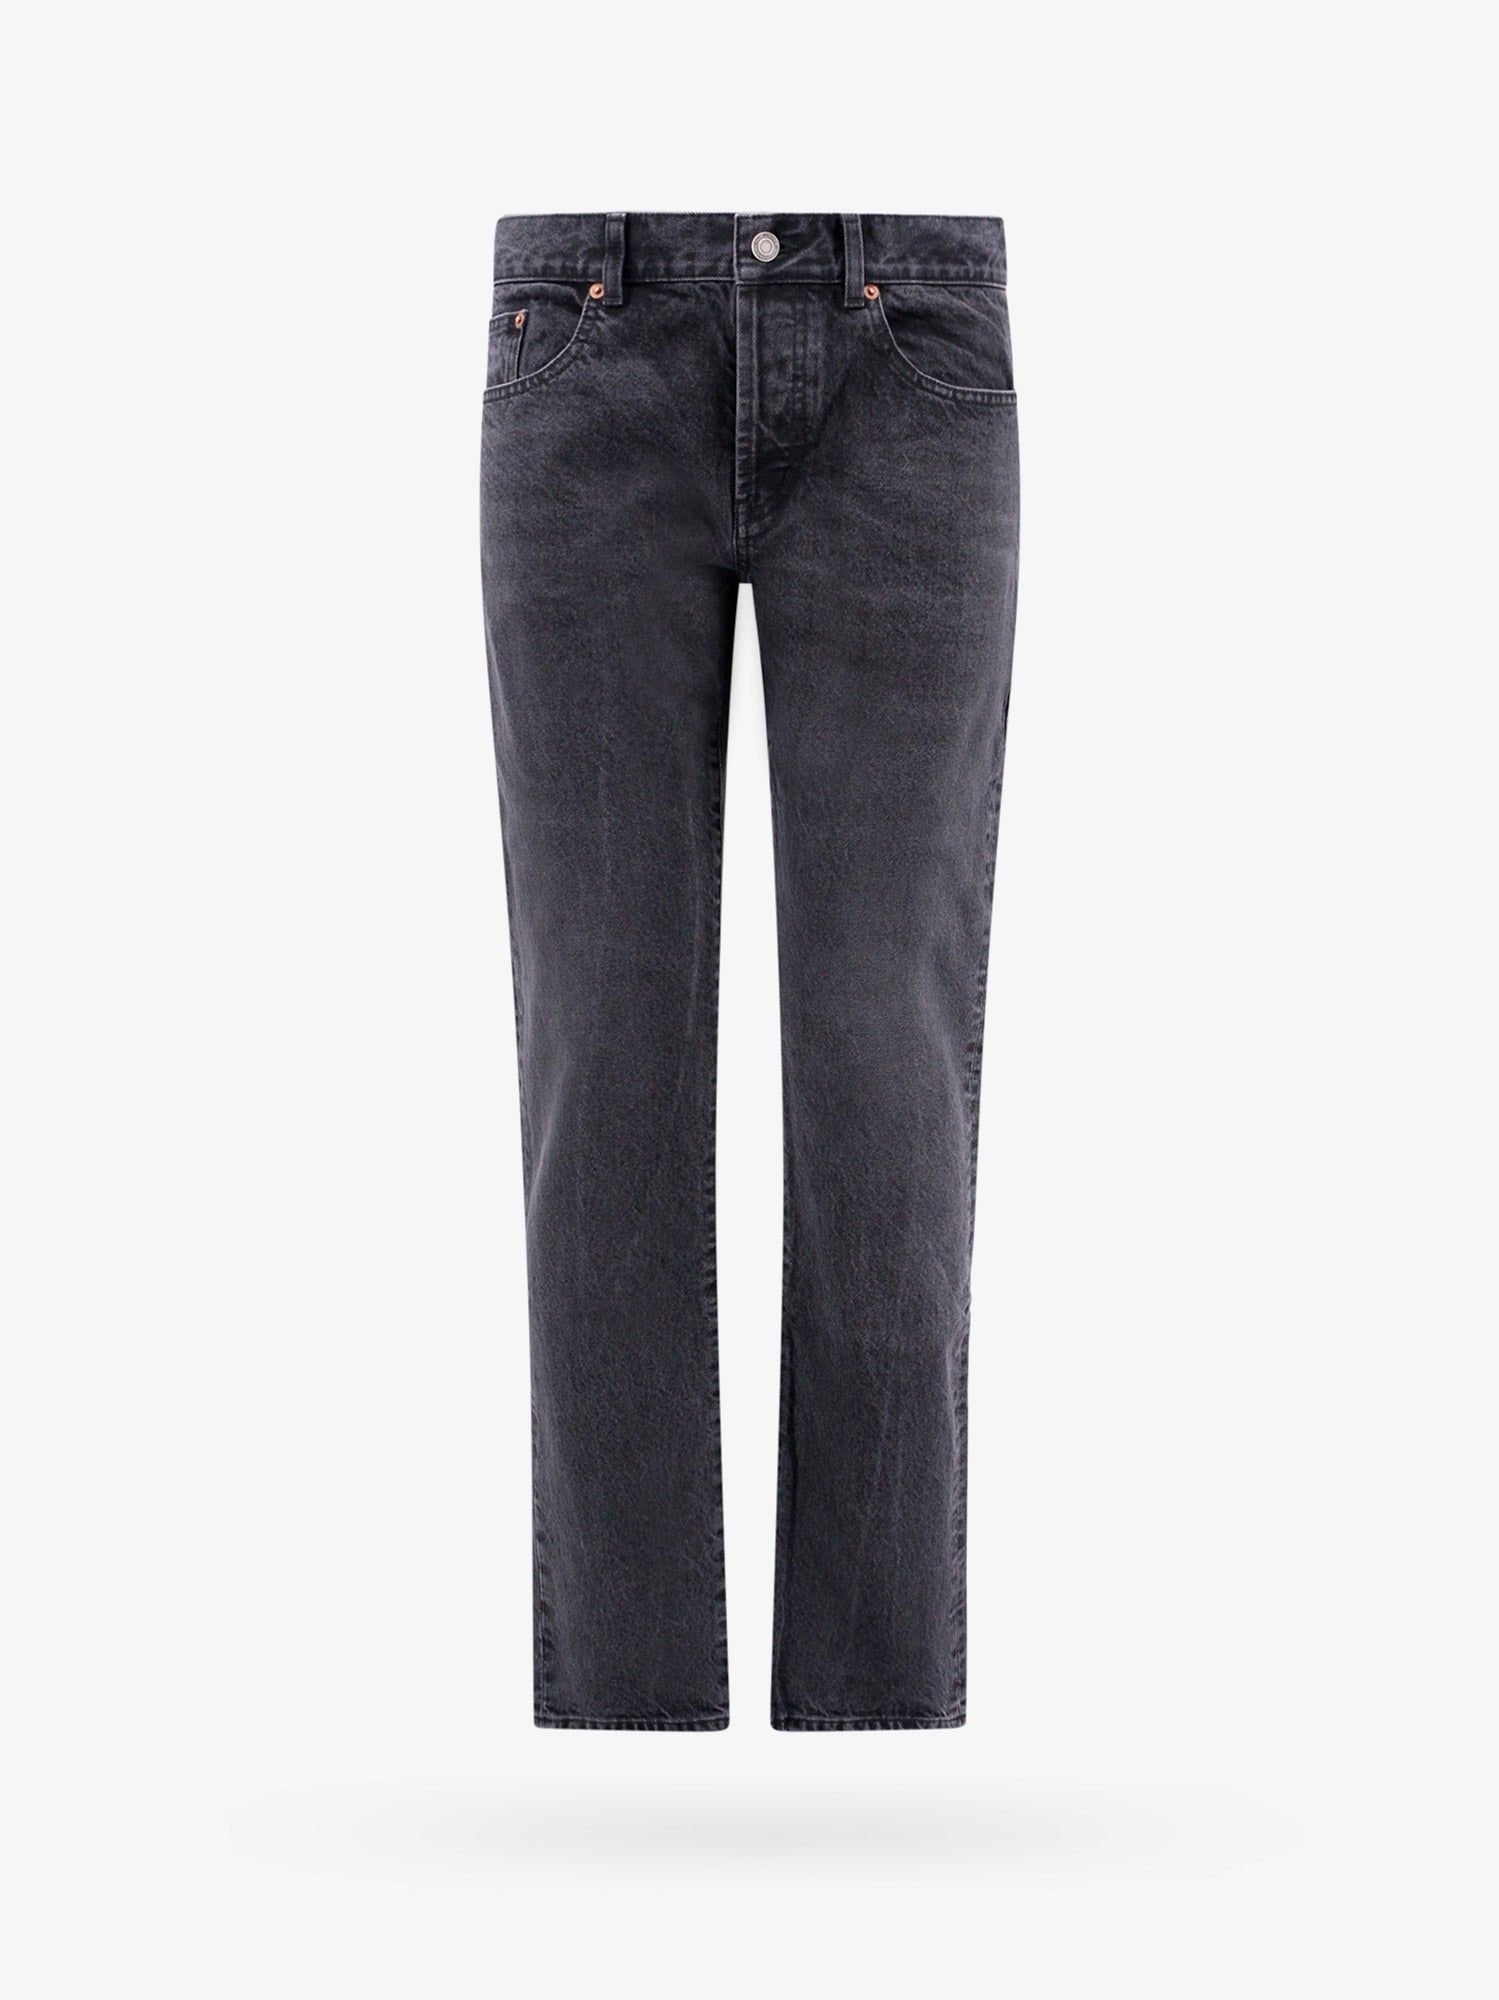 Saint Laurent Paris Jeans Man Black Jeans | Grailed